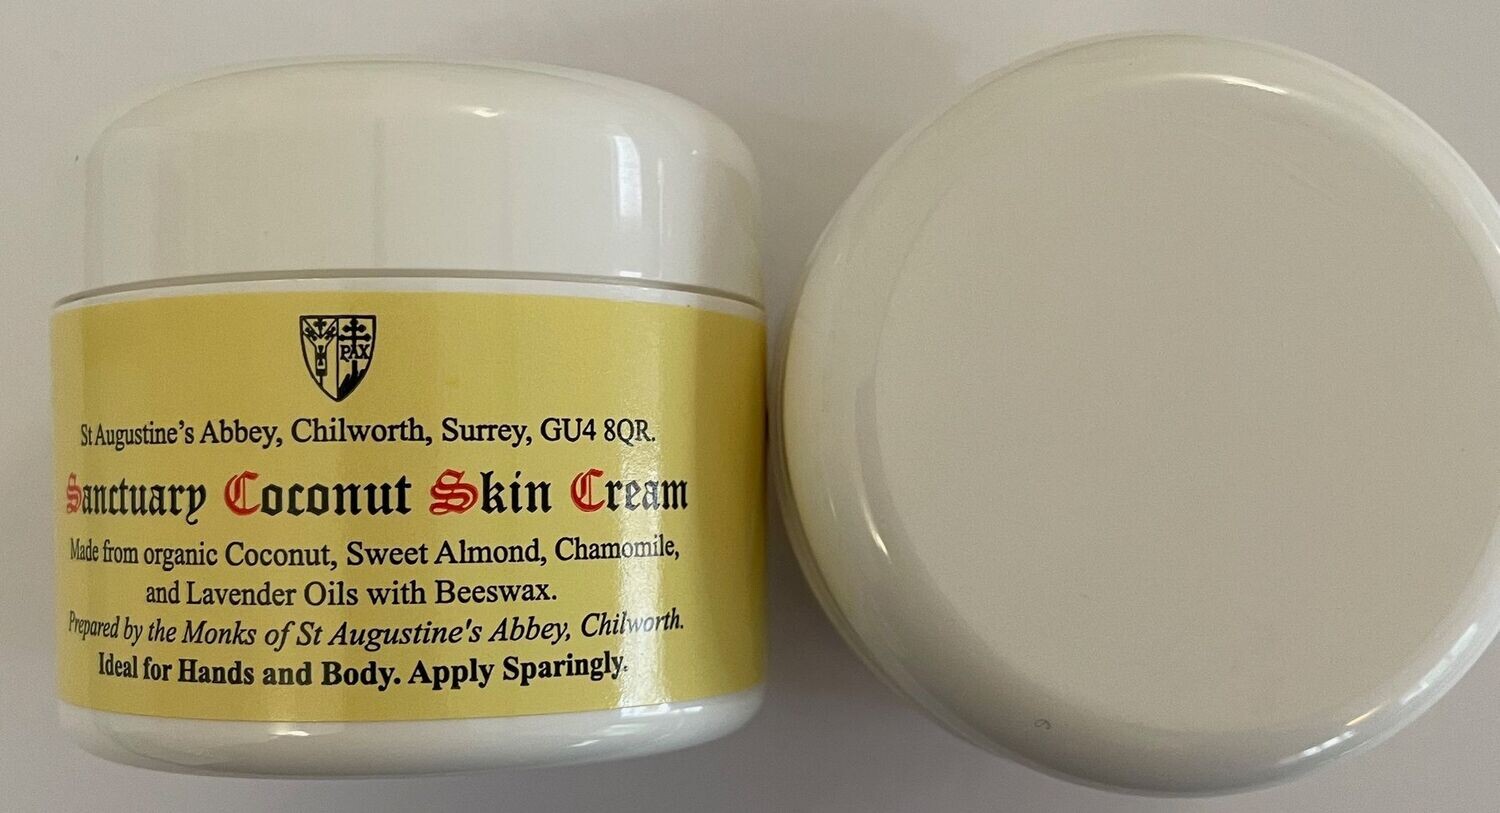 Sanctuary Coconut Skin Cream